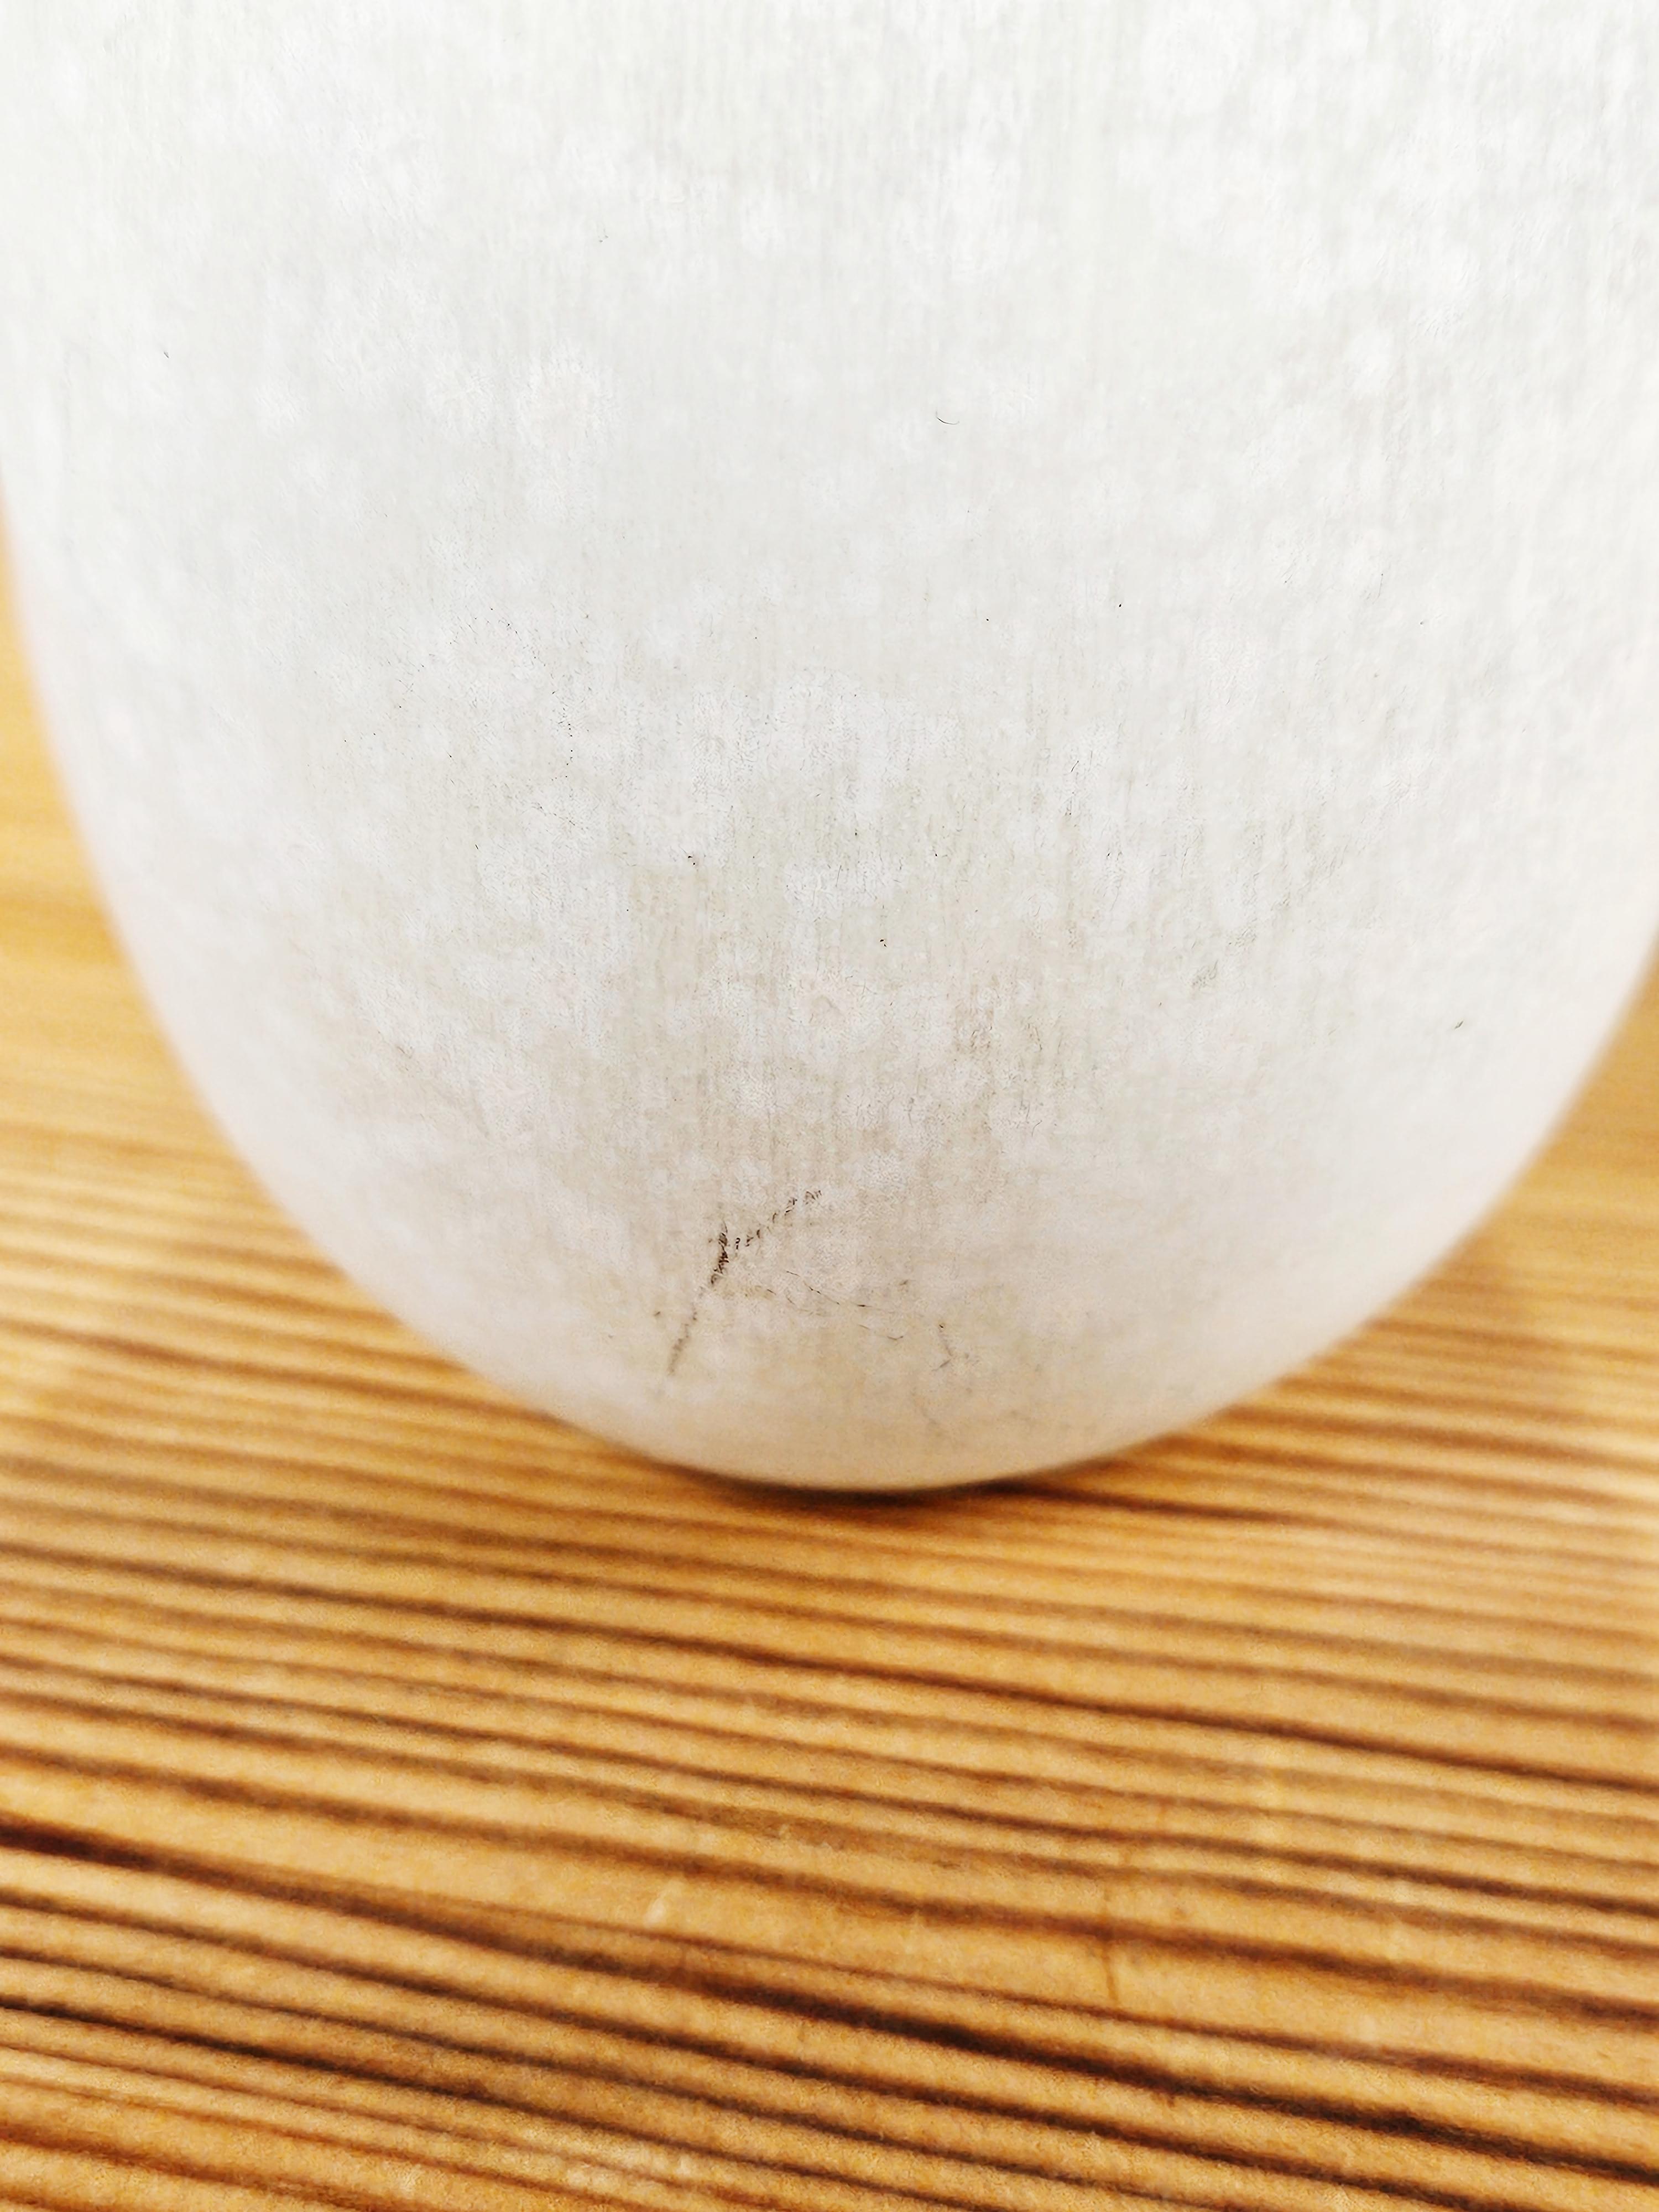 Swedish White stoneware vase by Carl-Harry Stålhane for Rörstrand, Sweden, 1960s For Sale